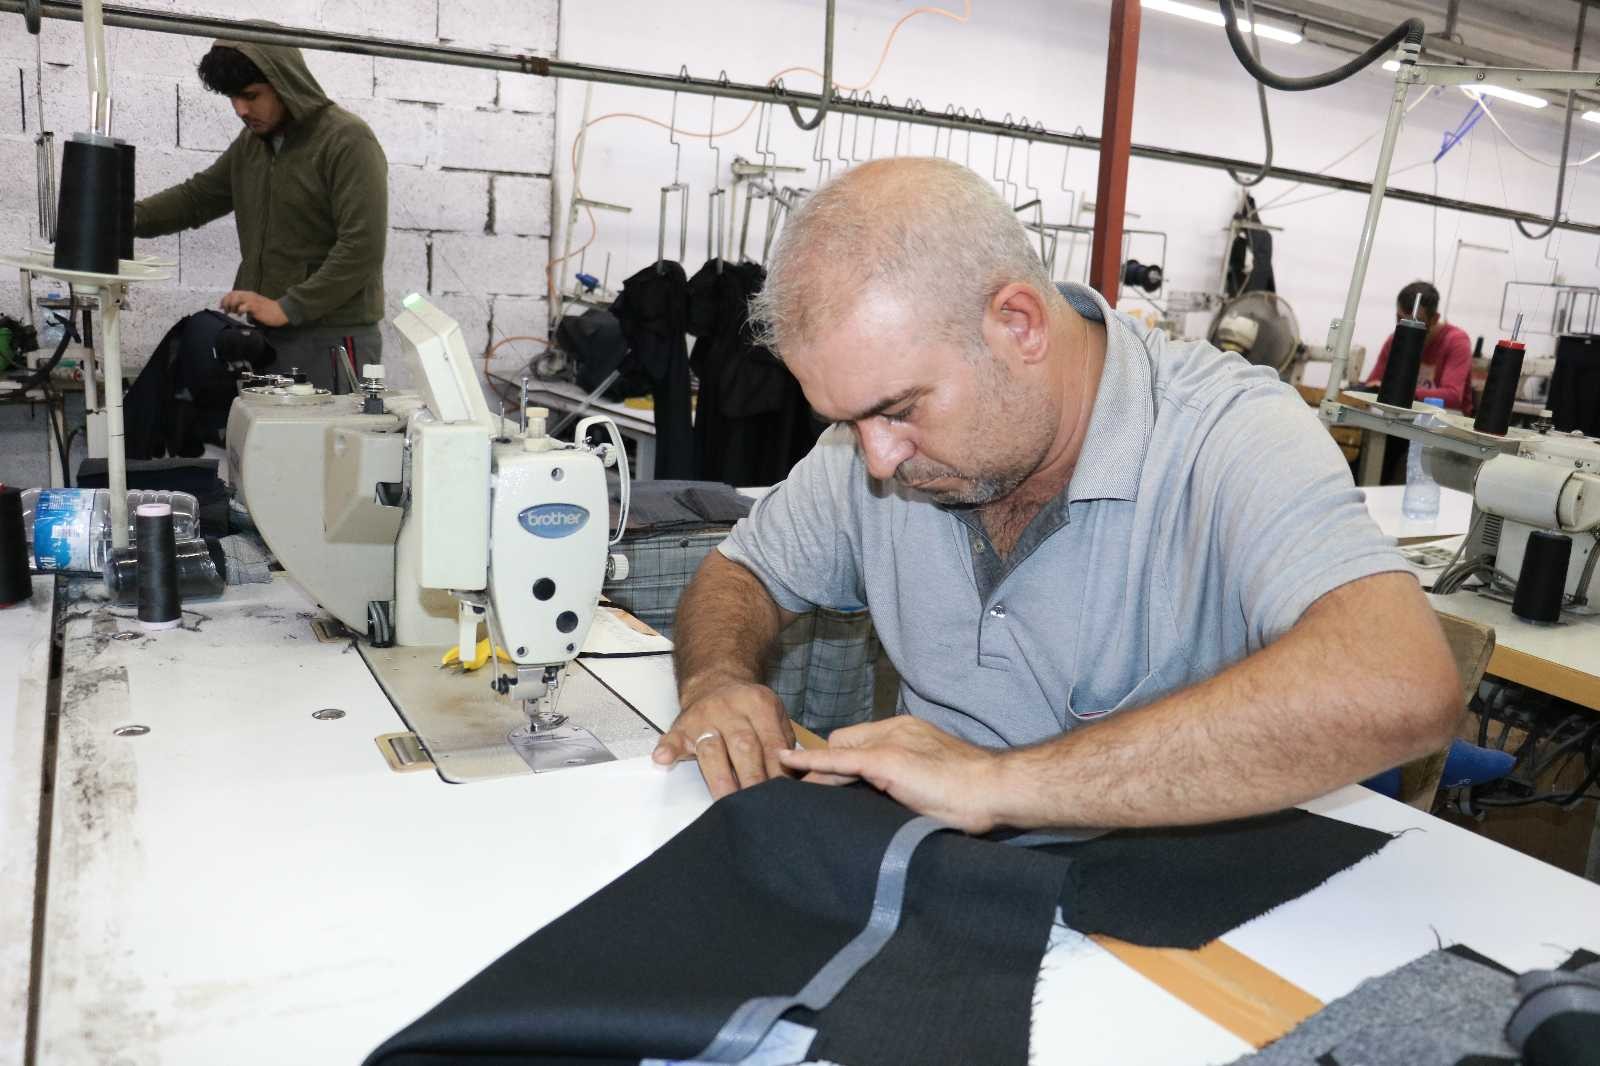 Ünlü markaların giysileri Kahramanmaraş’ta üretiliyor #kahramanmaras